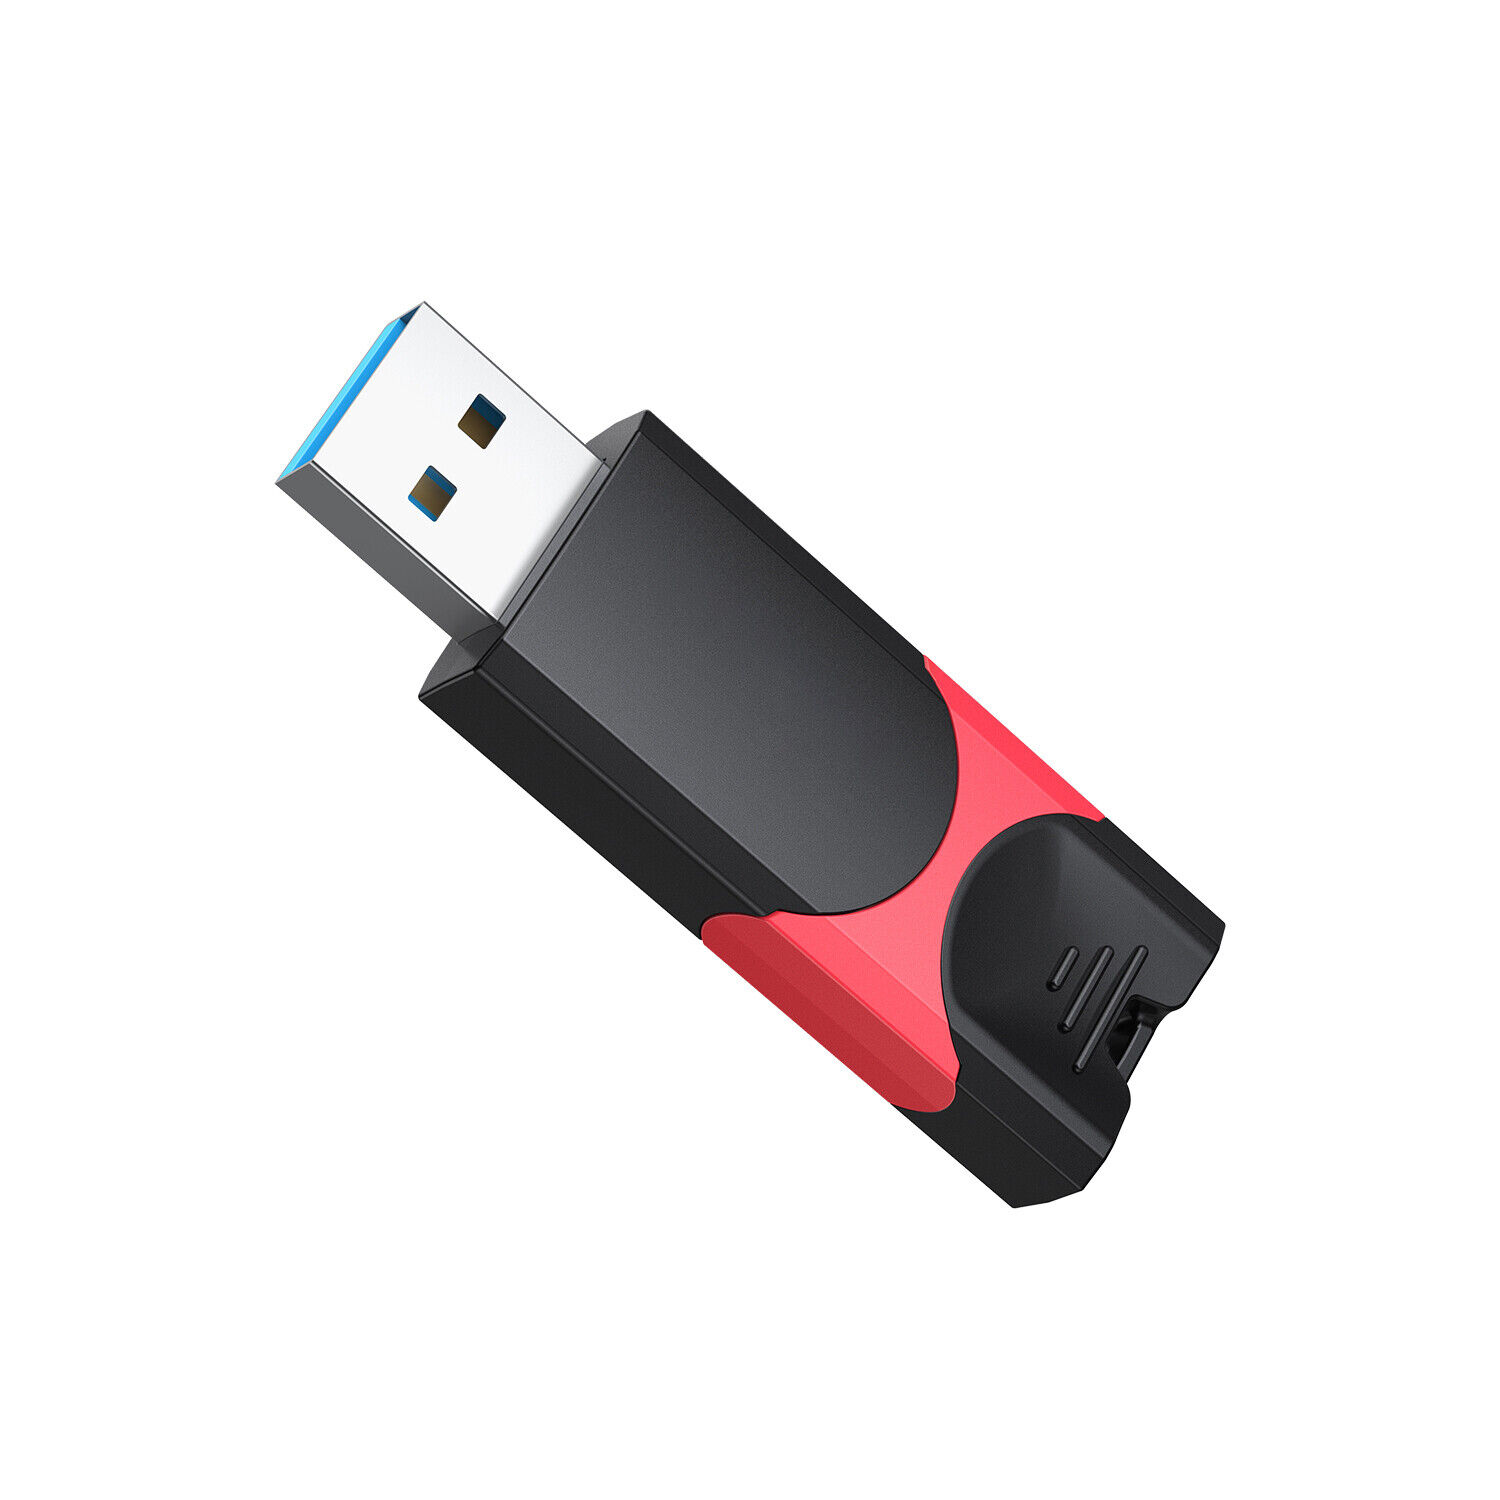 1x 2x 3x 5x 32GB USB 3.0 Flash Drive Thumb Drive Retractable Memory Stick LOT